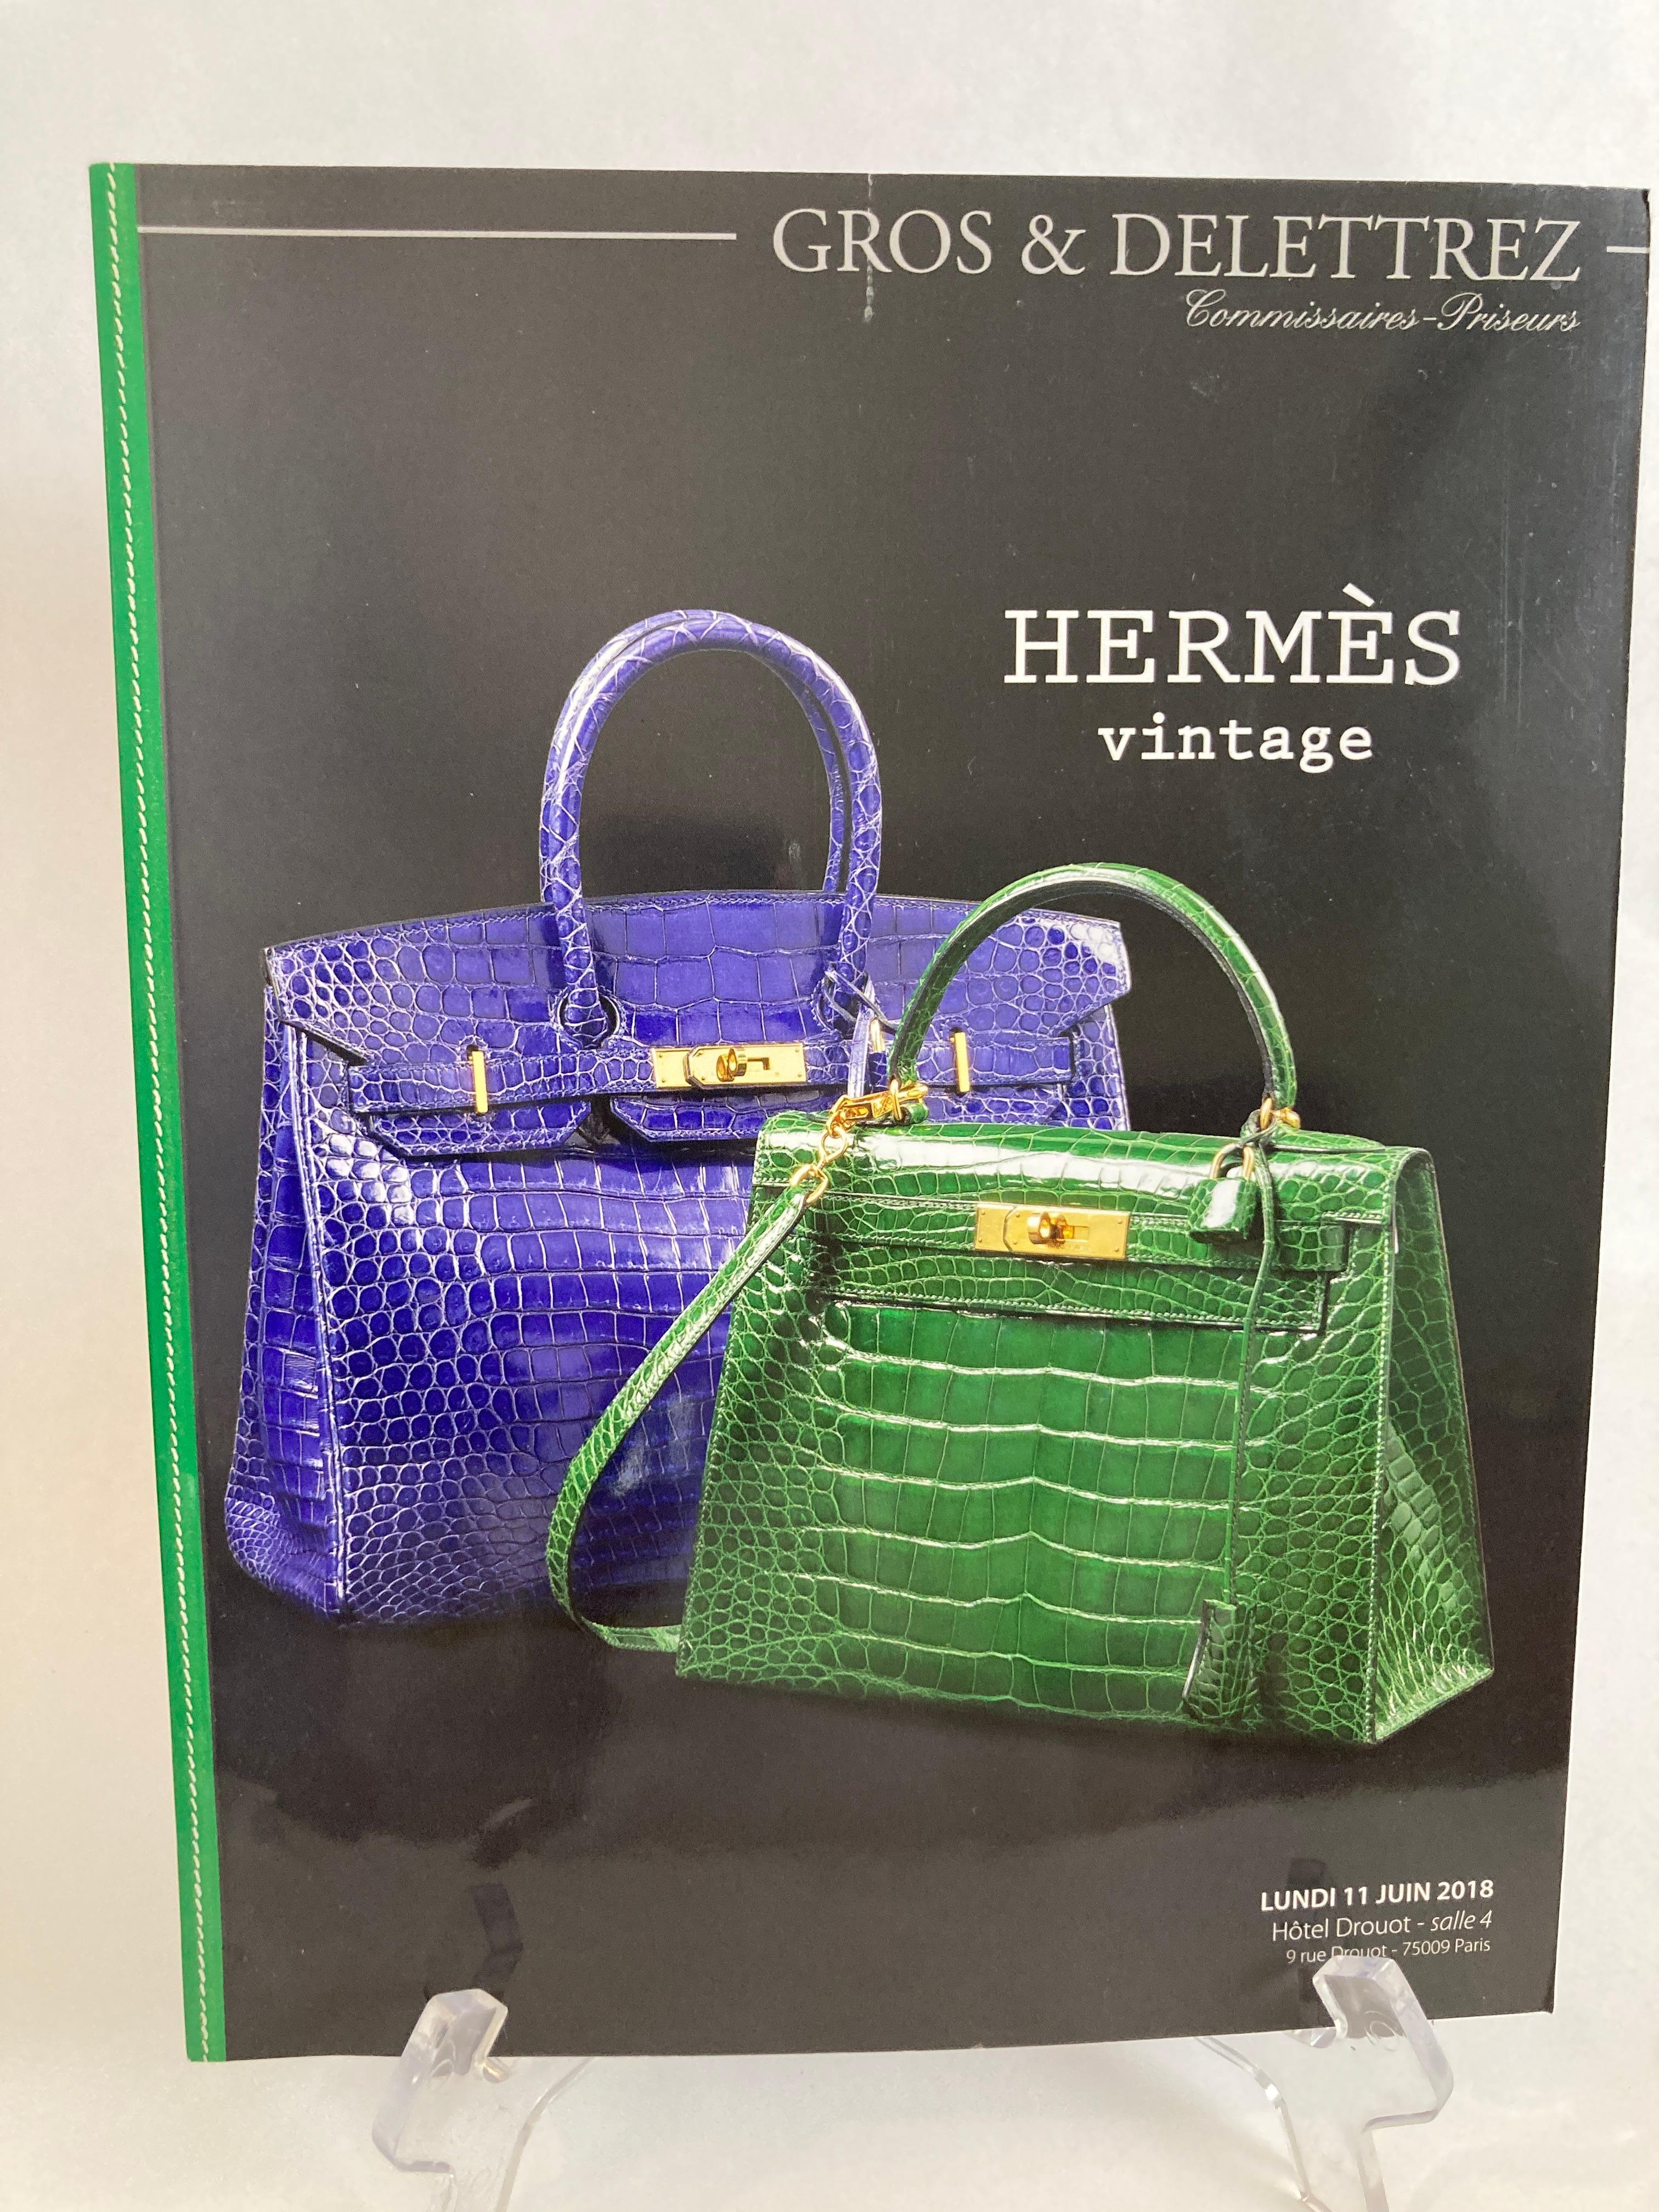 Gray Hermes Vintage Paris Auction Catalog 2018 Published by Gros & Delettrez For Sale